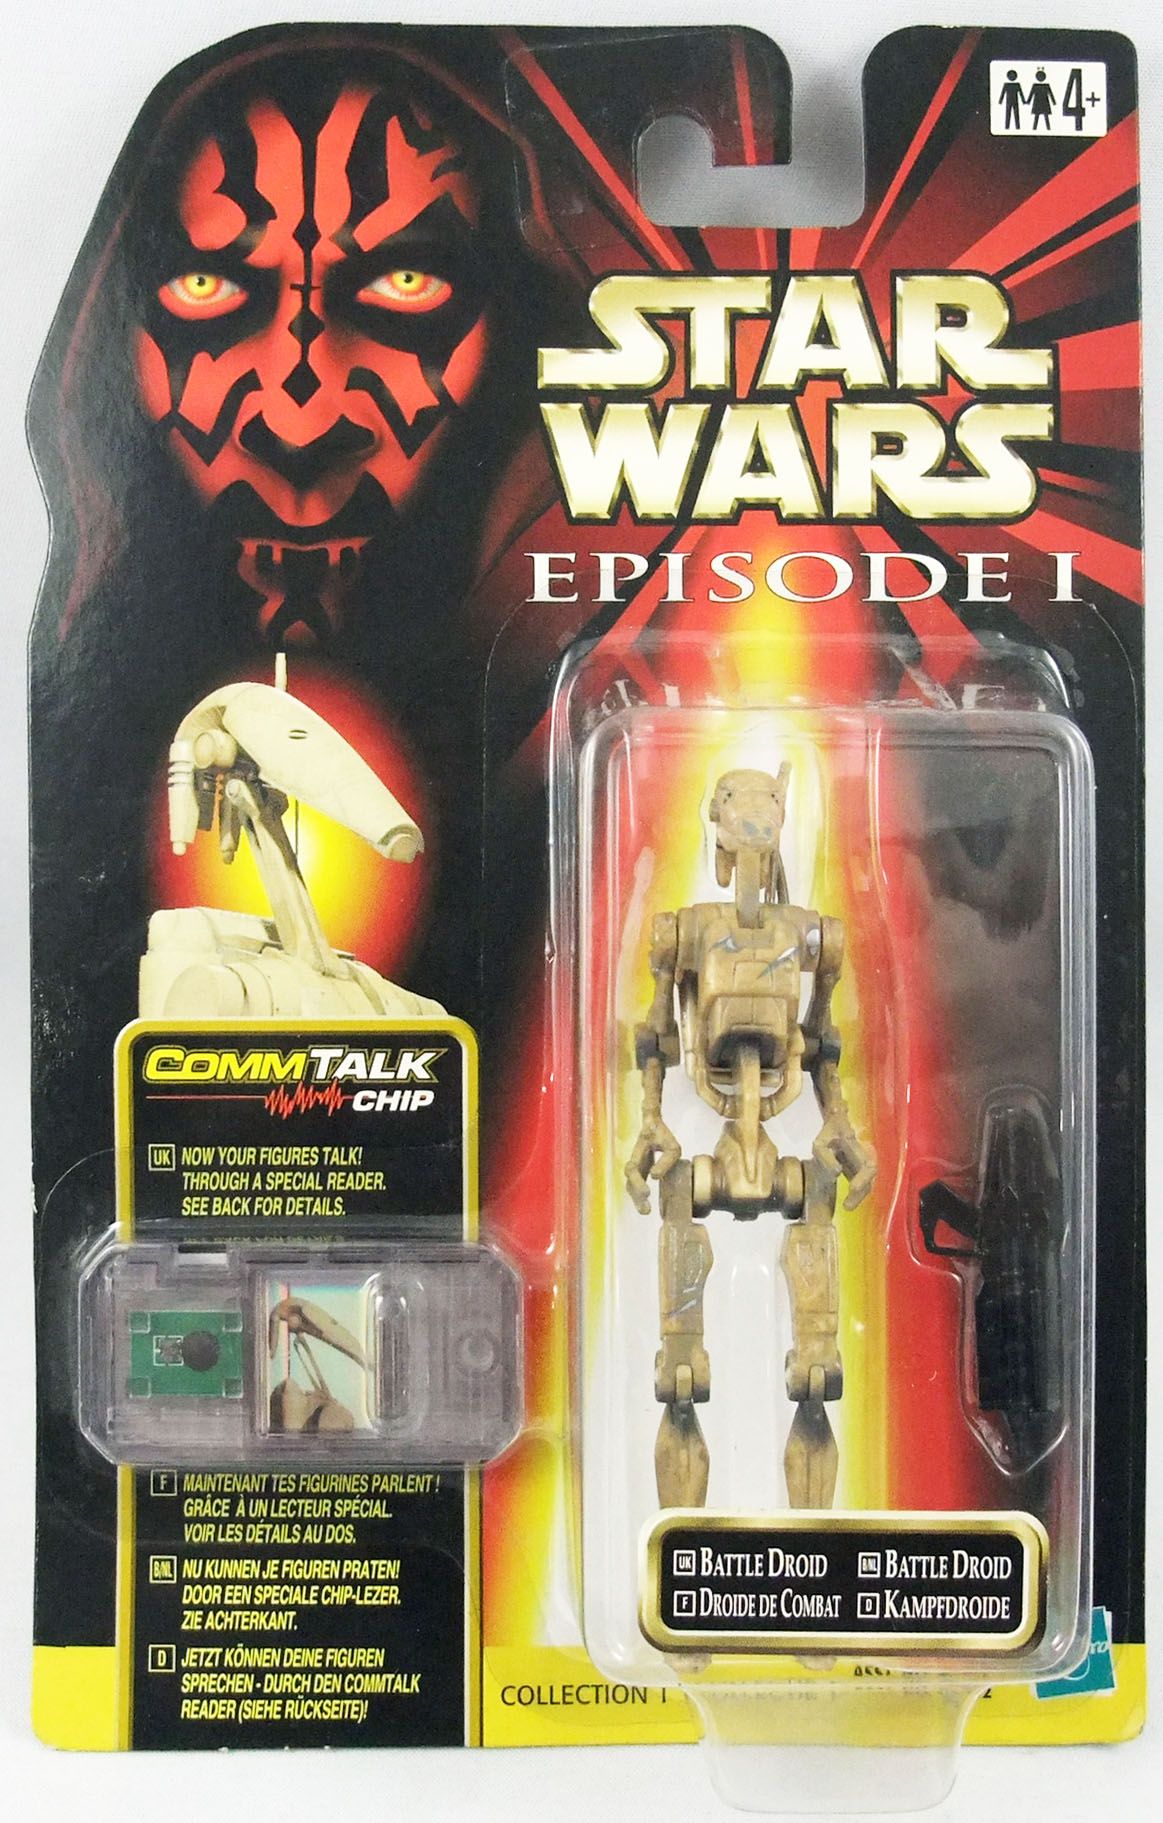 Battle Droid Saber Damage Action Figure for sale online Hasbro Star Wars Episode 1 